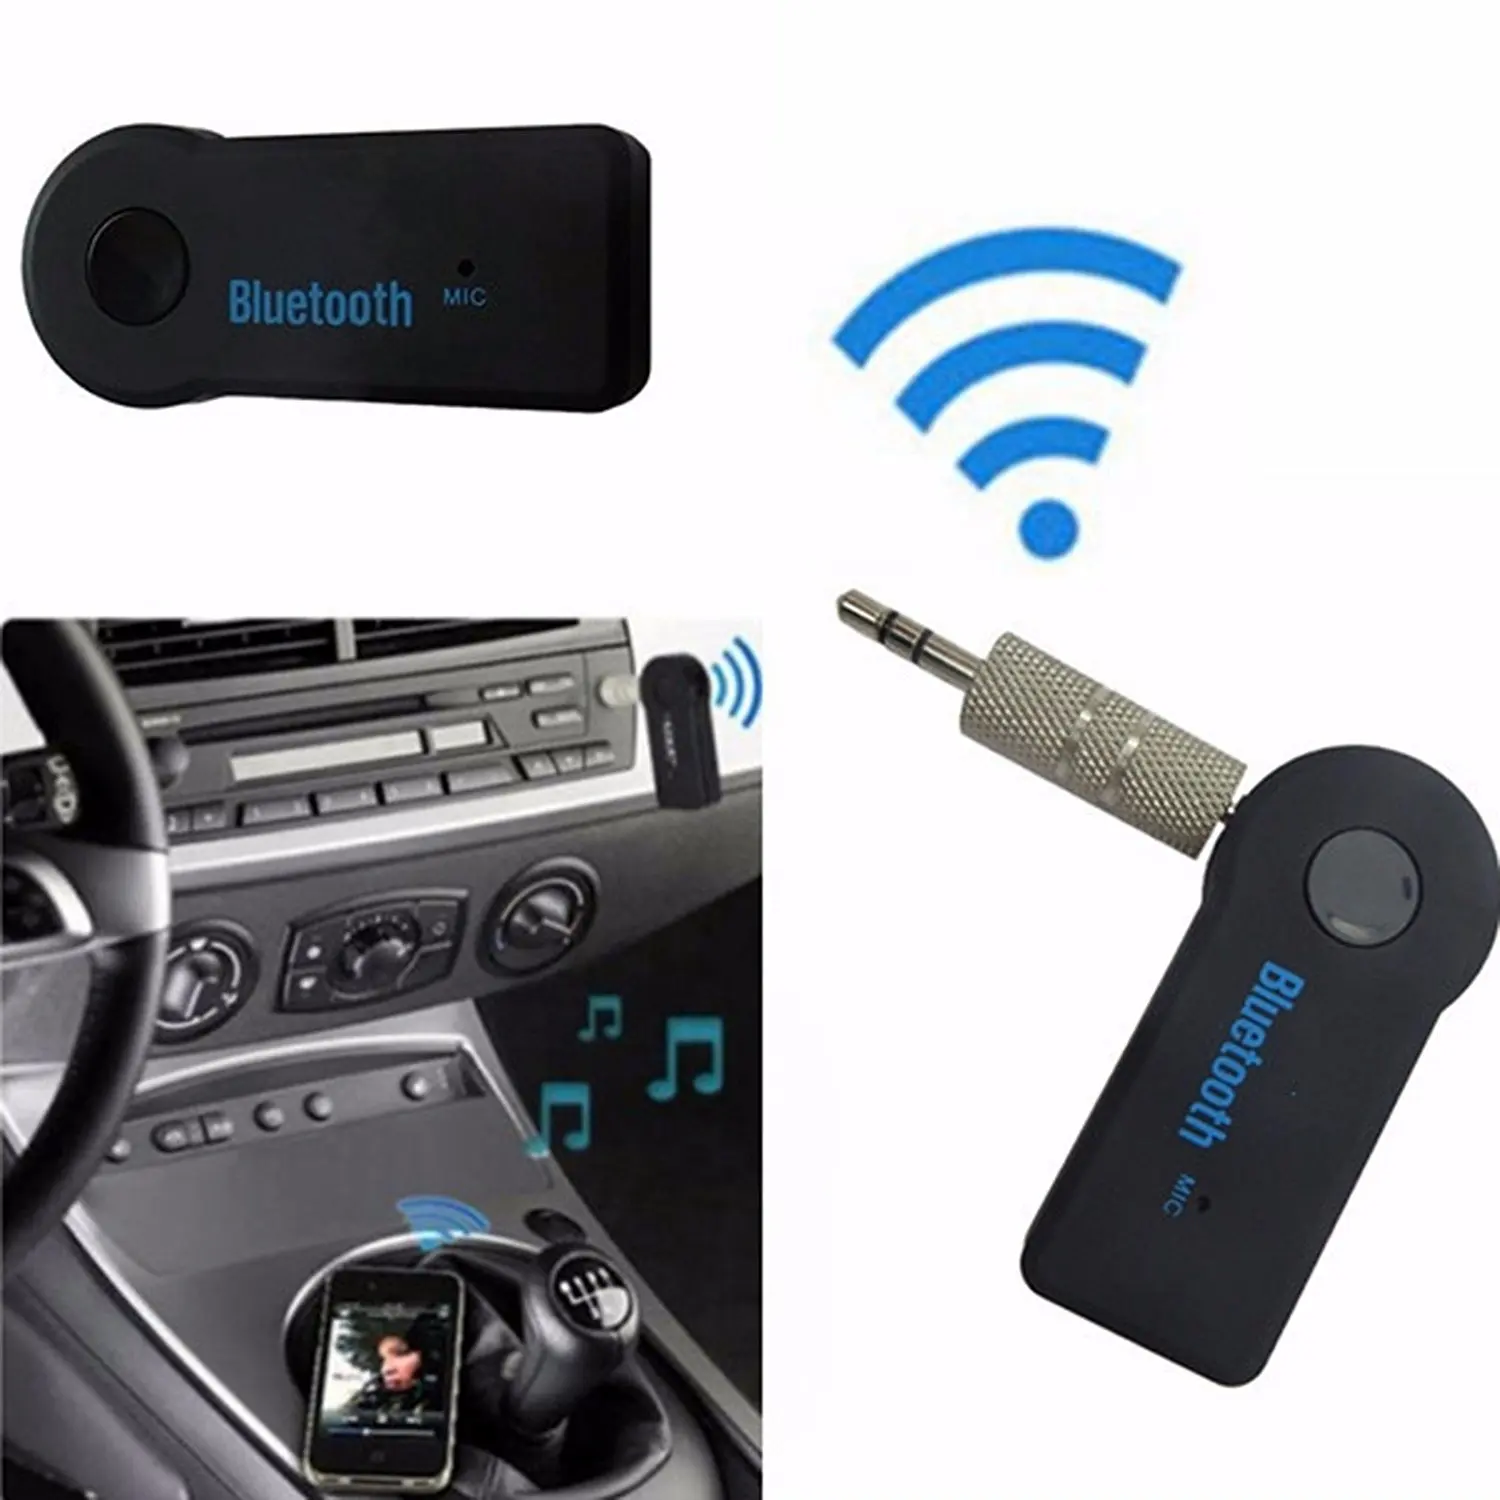 Купить bluetooth магнитолу. Адаптер aux Bluetooth carlive bt350. Блютуз адаптер для автомагнитолы BT 390. Модулятор для автомагнитолы с блютуз с аукс. Aux Bluetooth для машины lx470.